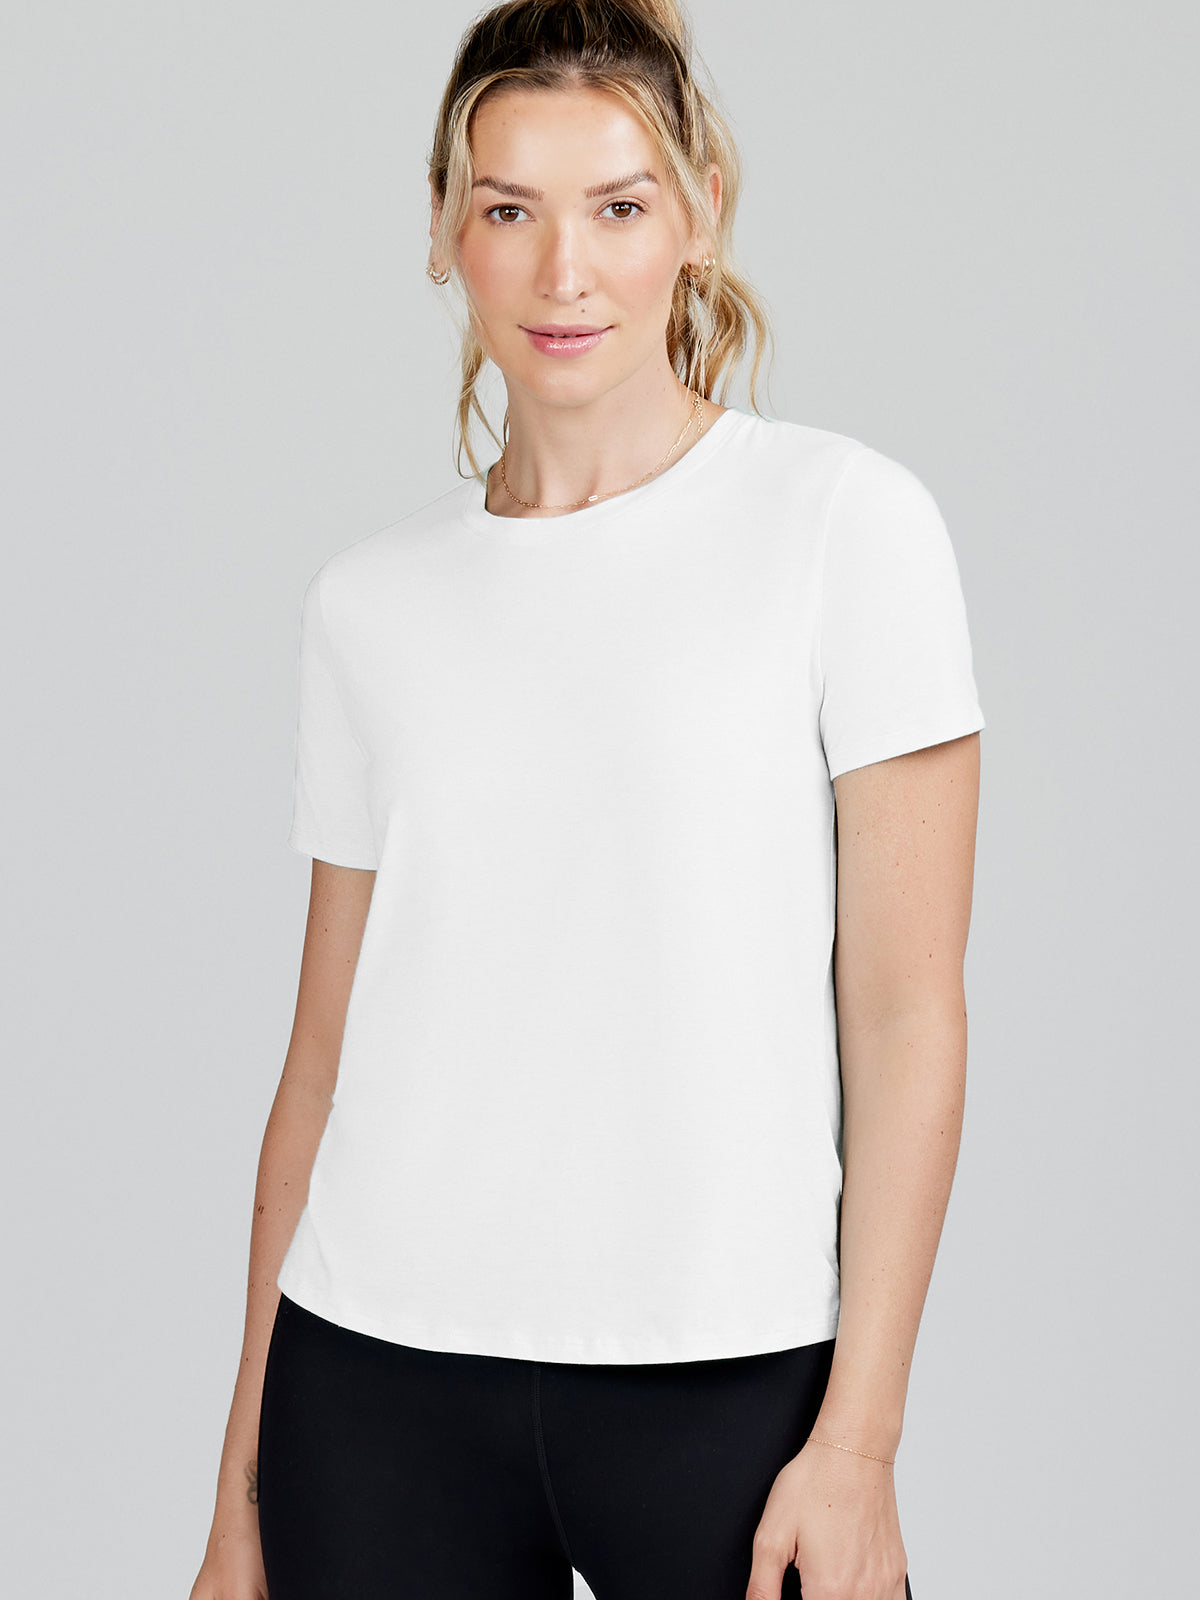 All Day Short Sleeve T-Shirt - tasc Performance (White)